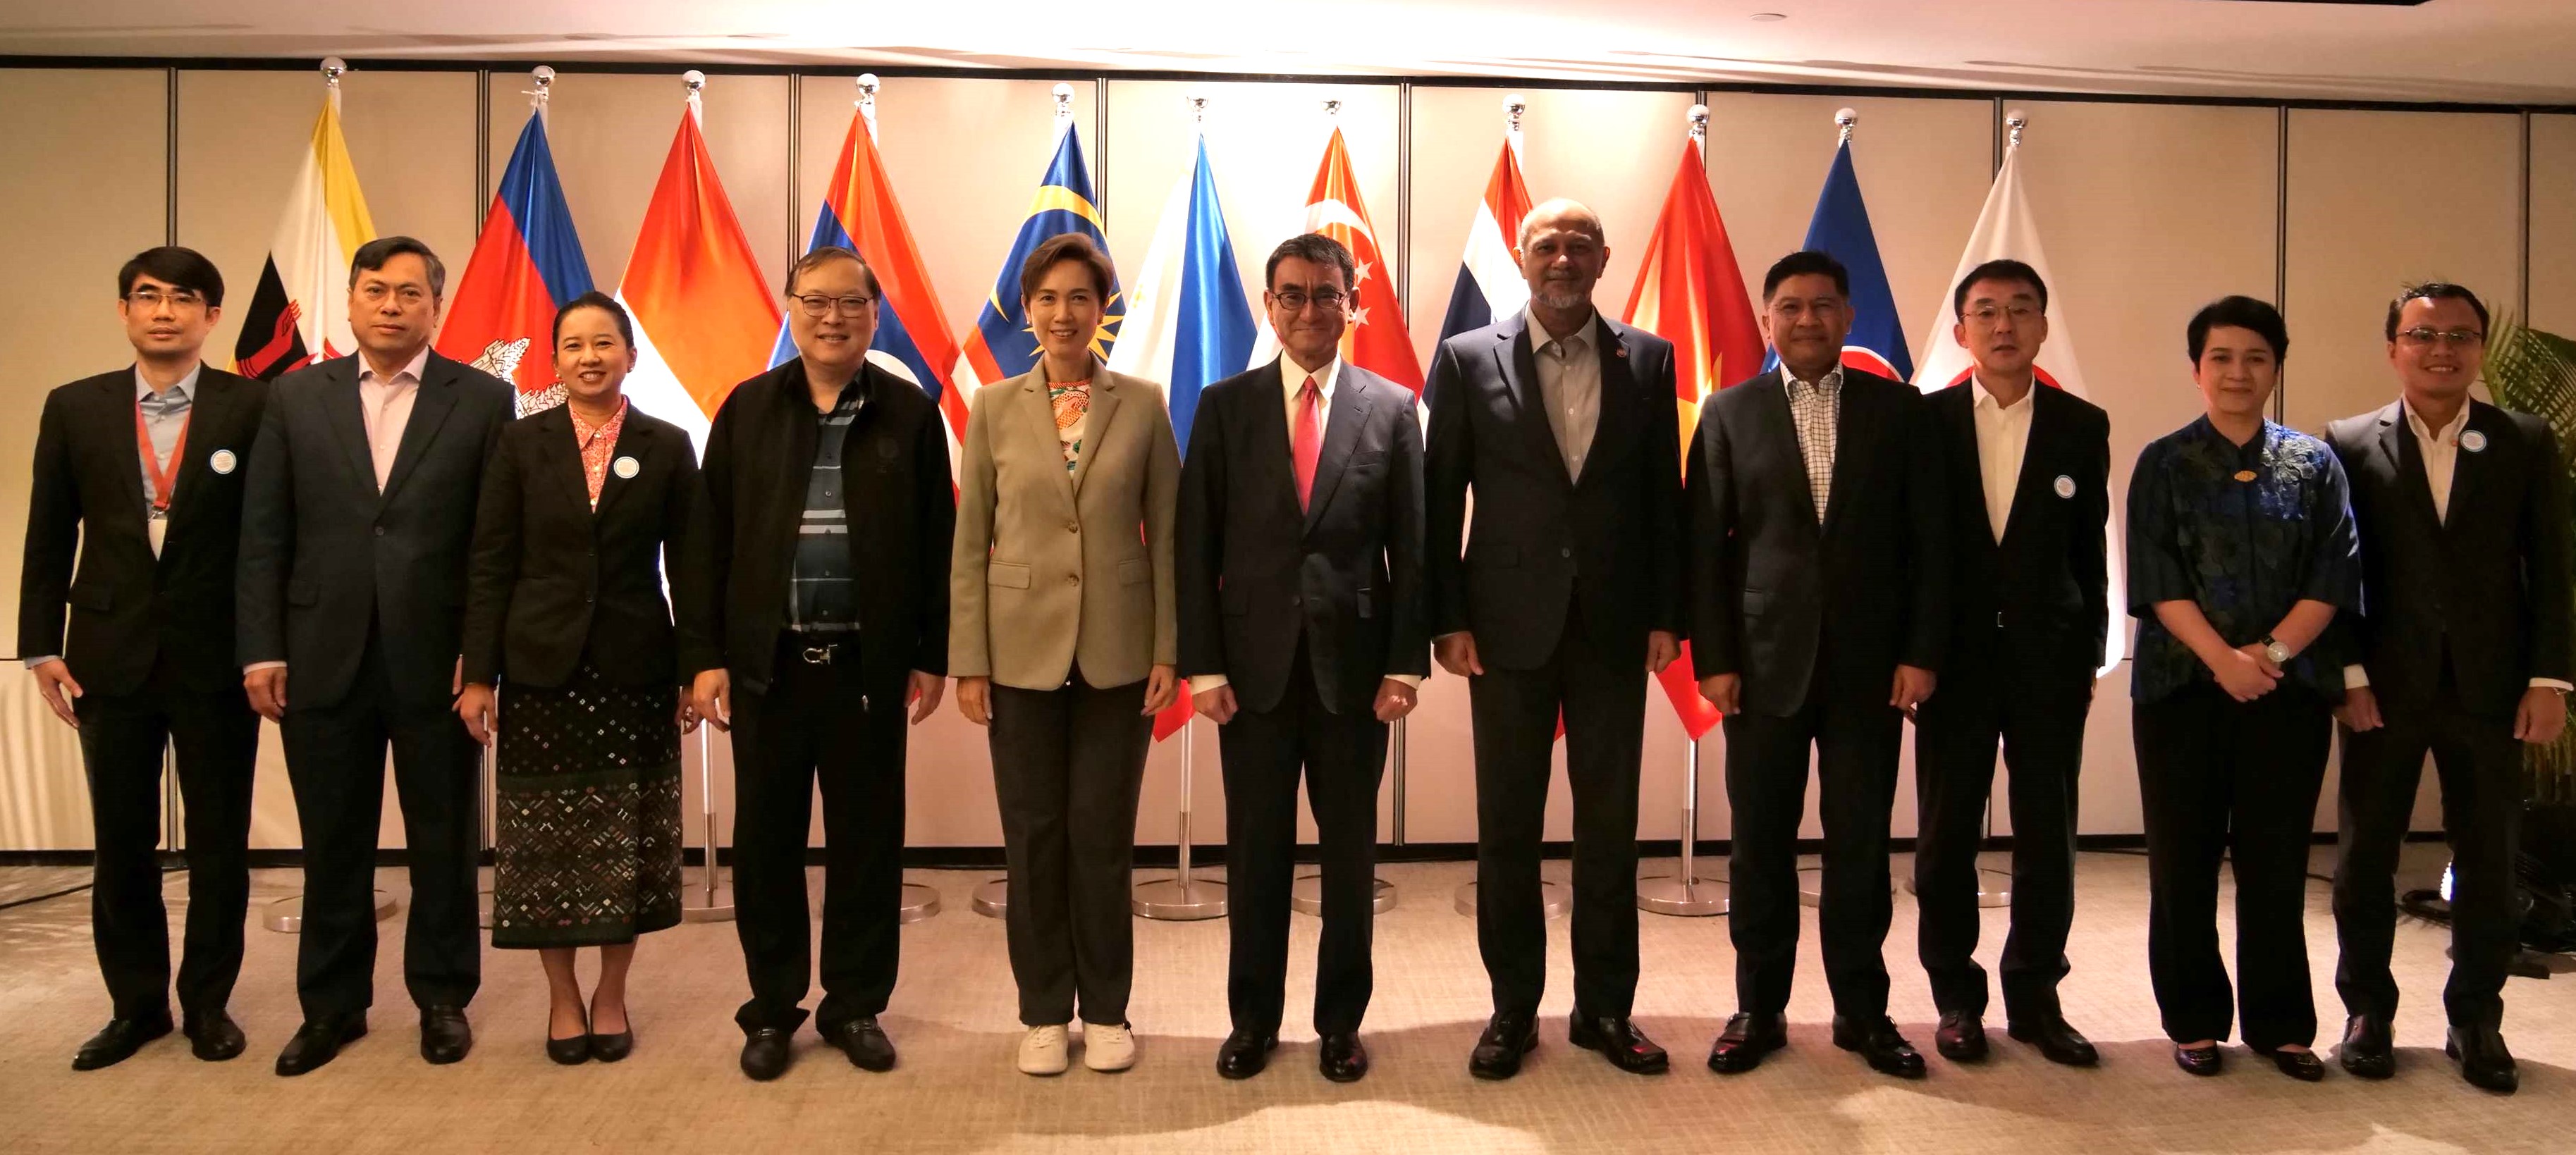 閣僚会合参加者11名の集合写真。河野大臣は左から6番目に並んでいる。